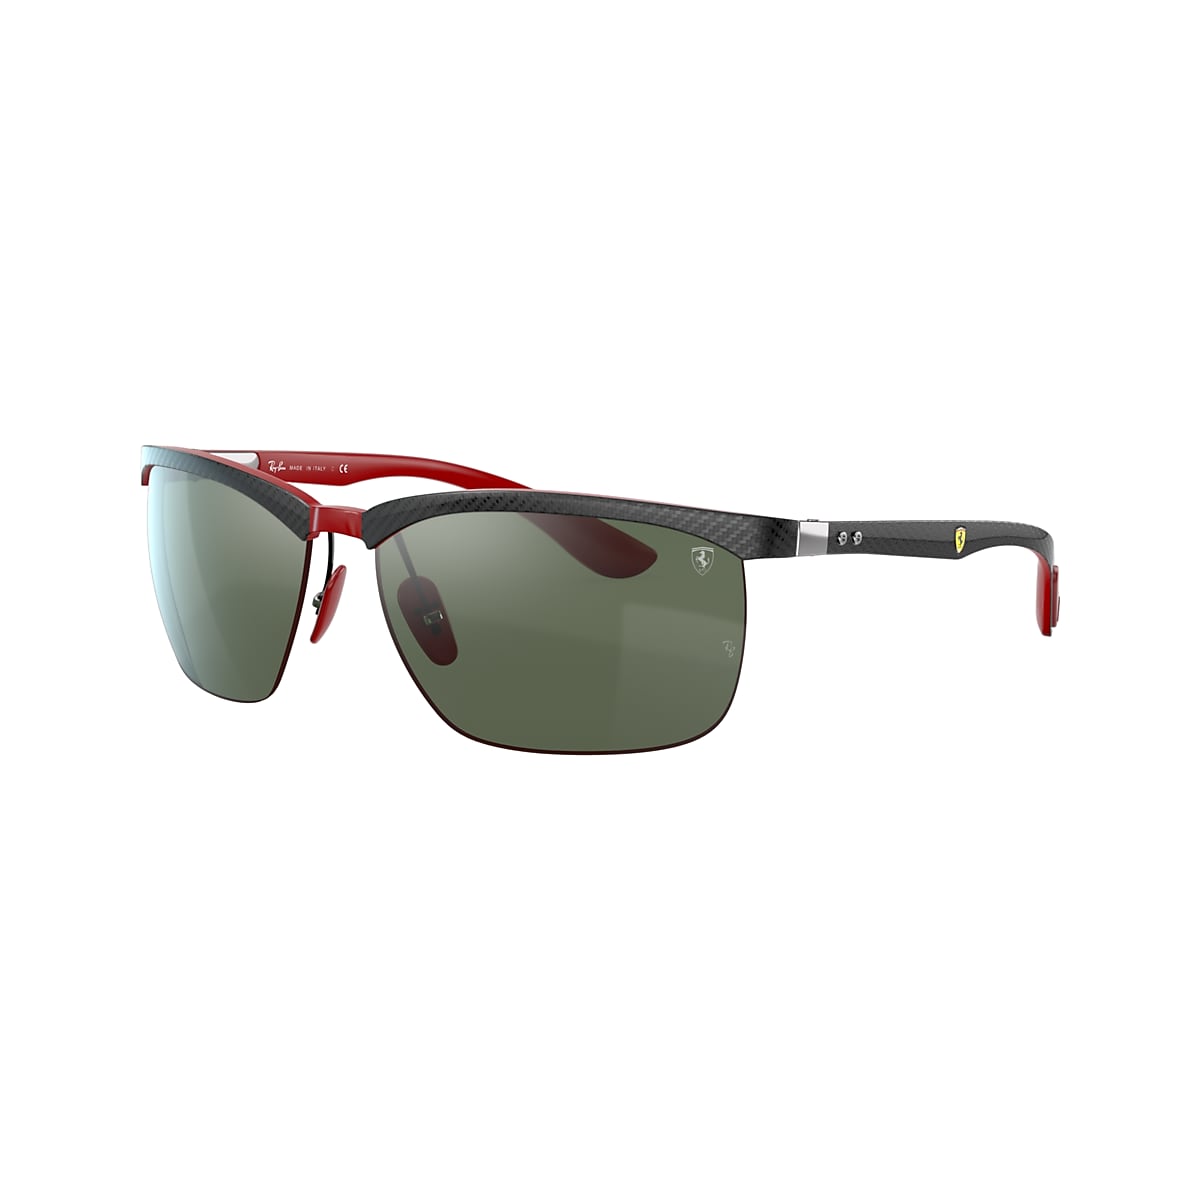 Ray-Ban Scuderia Ferrari Collection 63 Green Classic G-15 & Black Sunglasses | Sunglass Hut USA